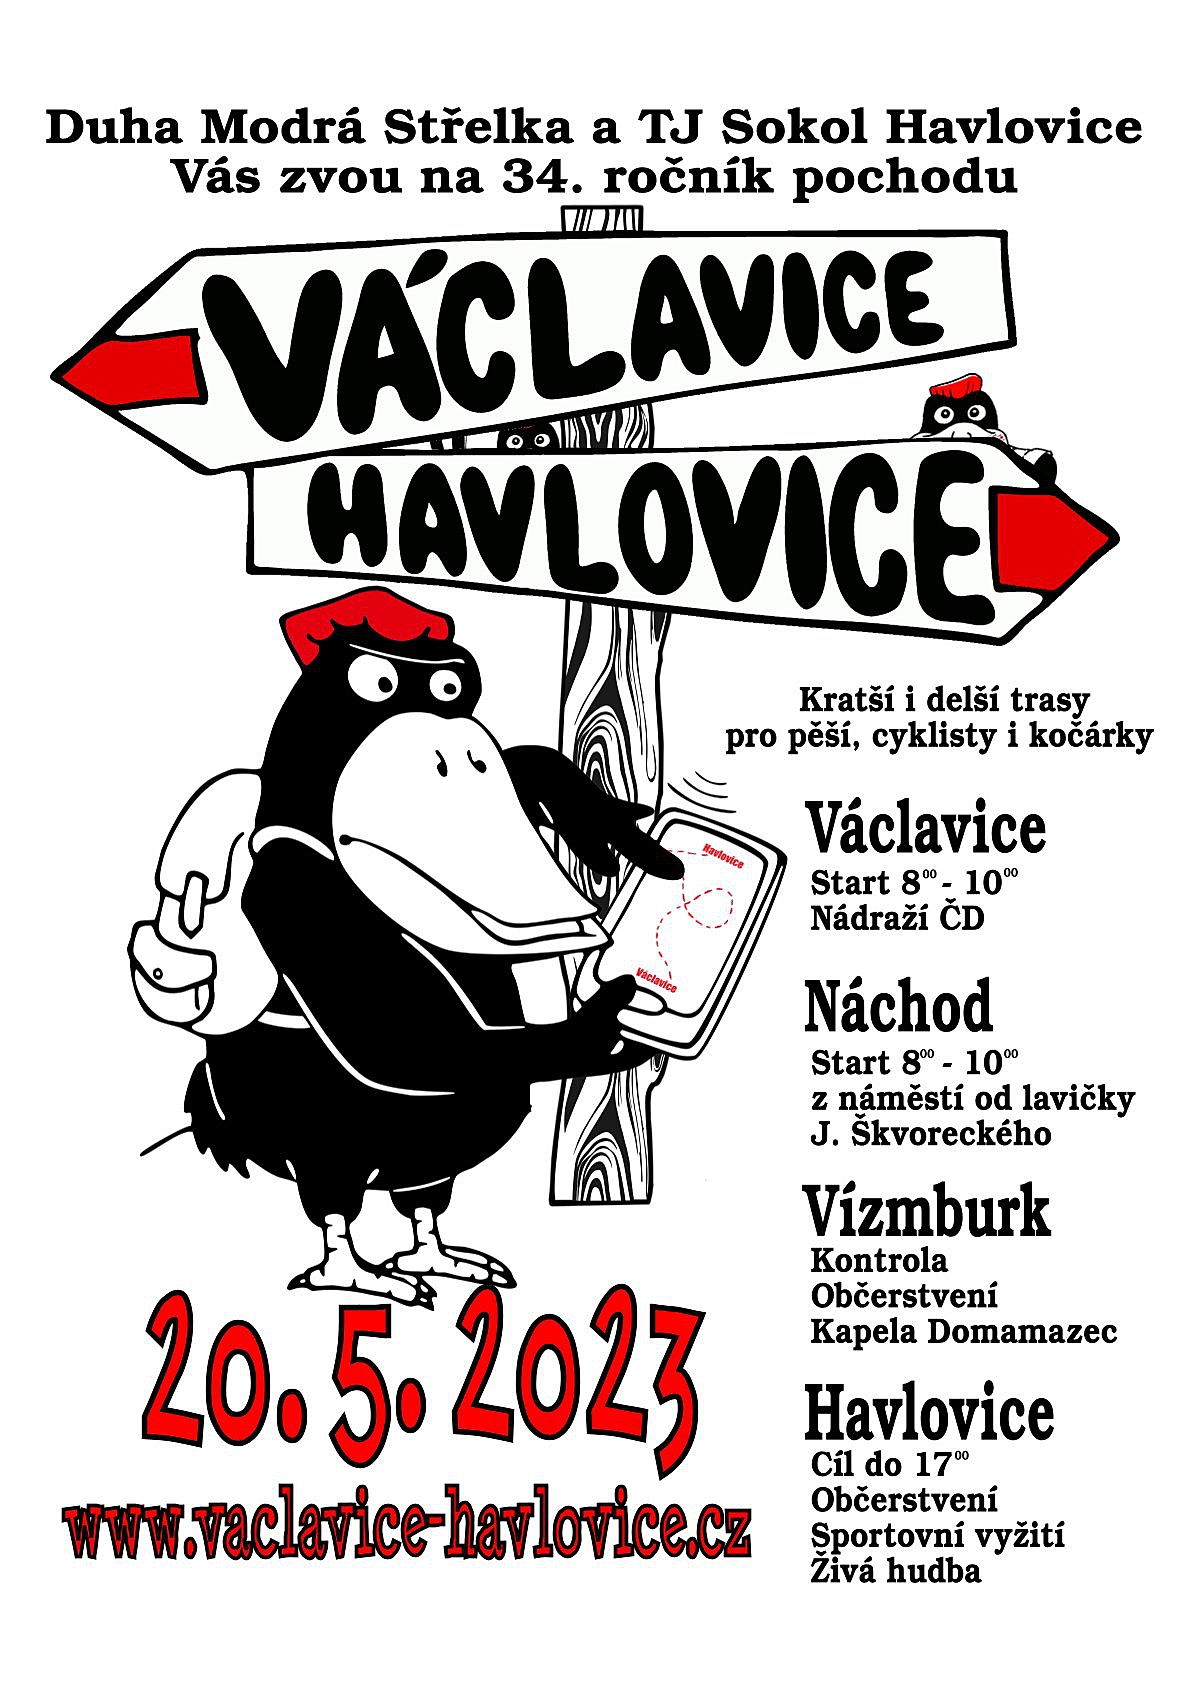 Pochod Václavice - Havlovice 2023